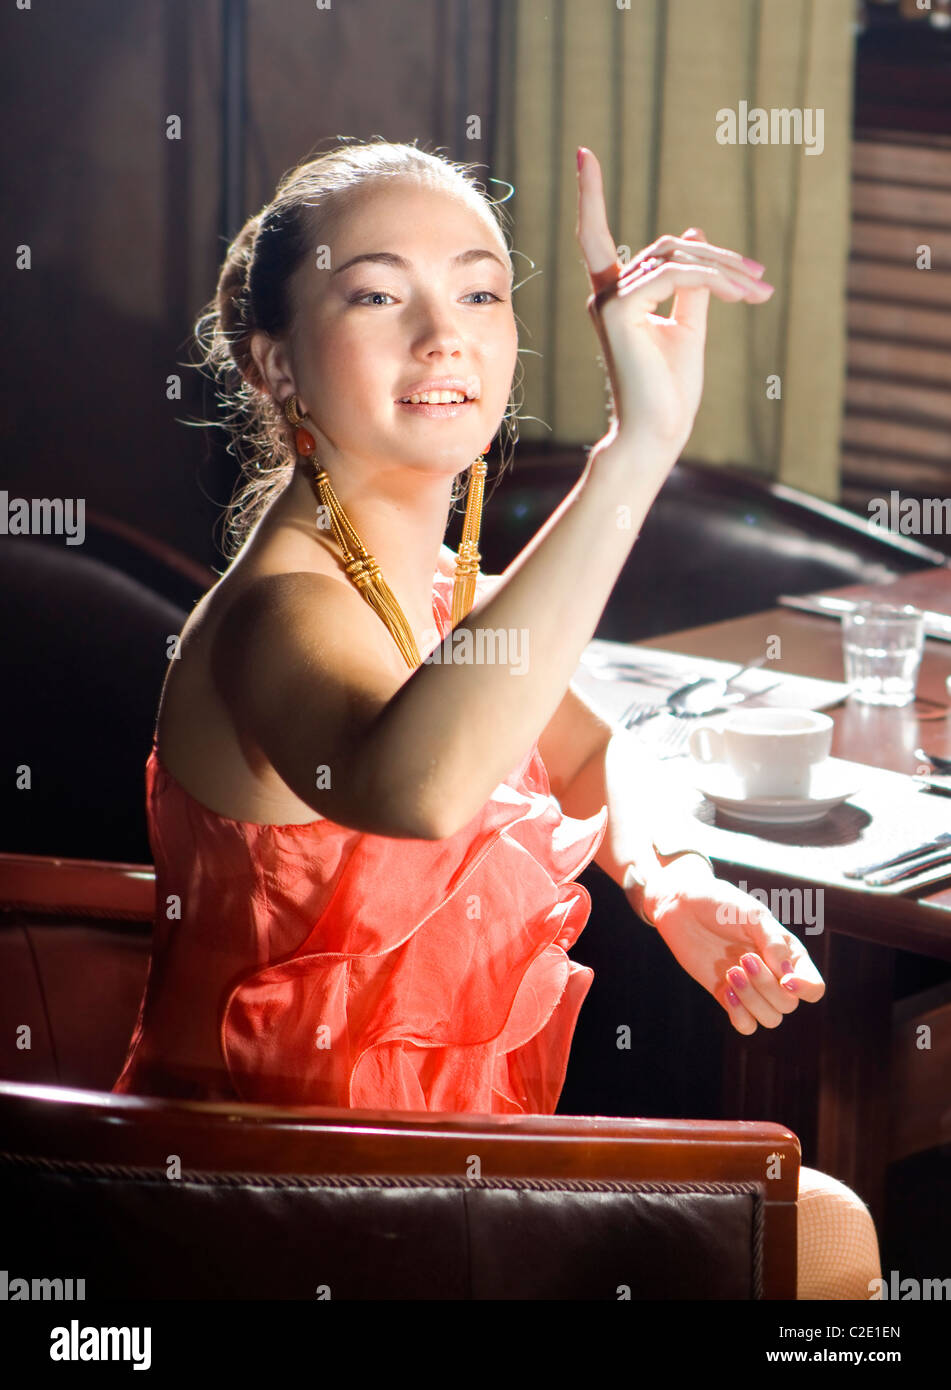 La donna si siede a tavola e fa un segno al cameriere al ristorante Foto Stock